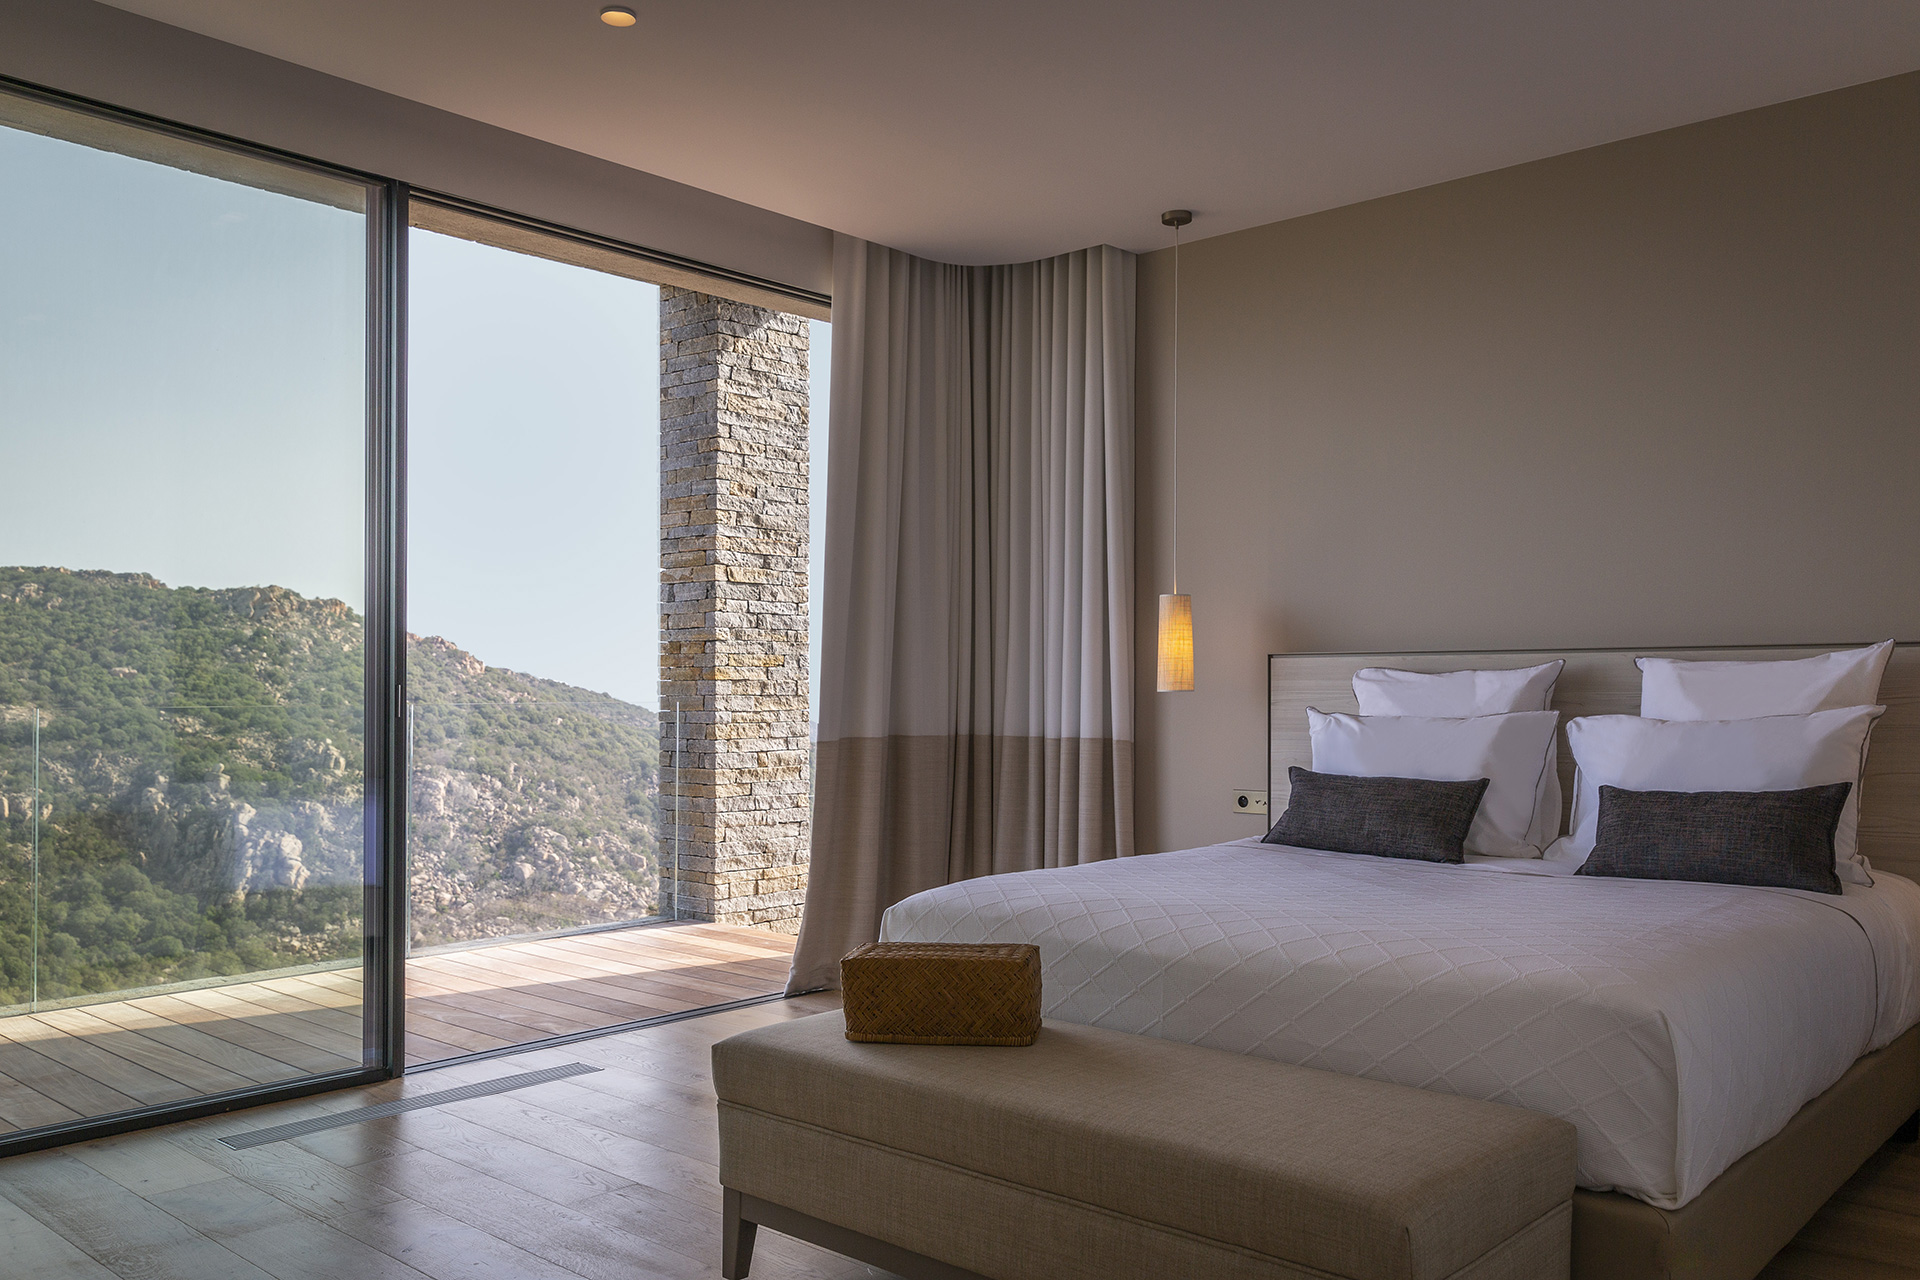 Room of a villa in Corsica by Borella Art Design